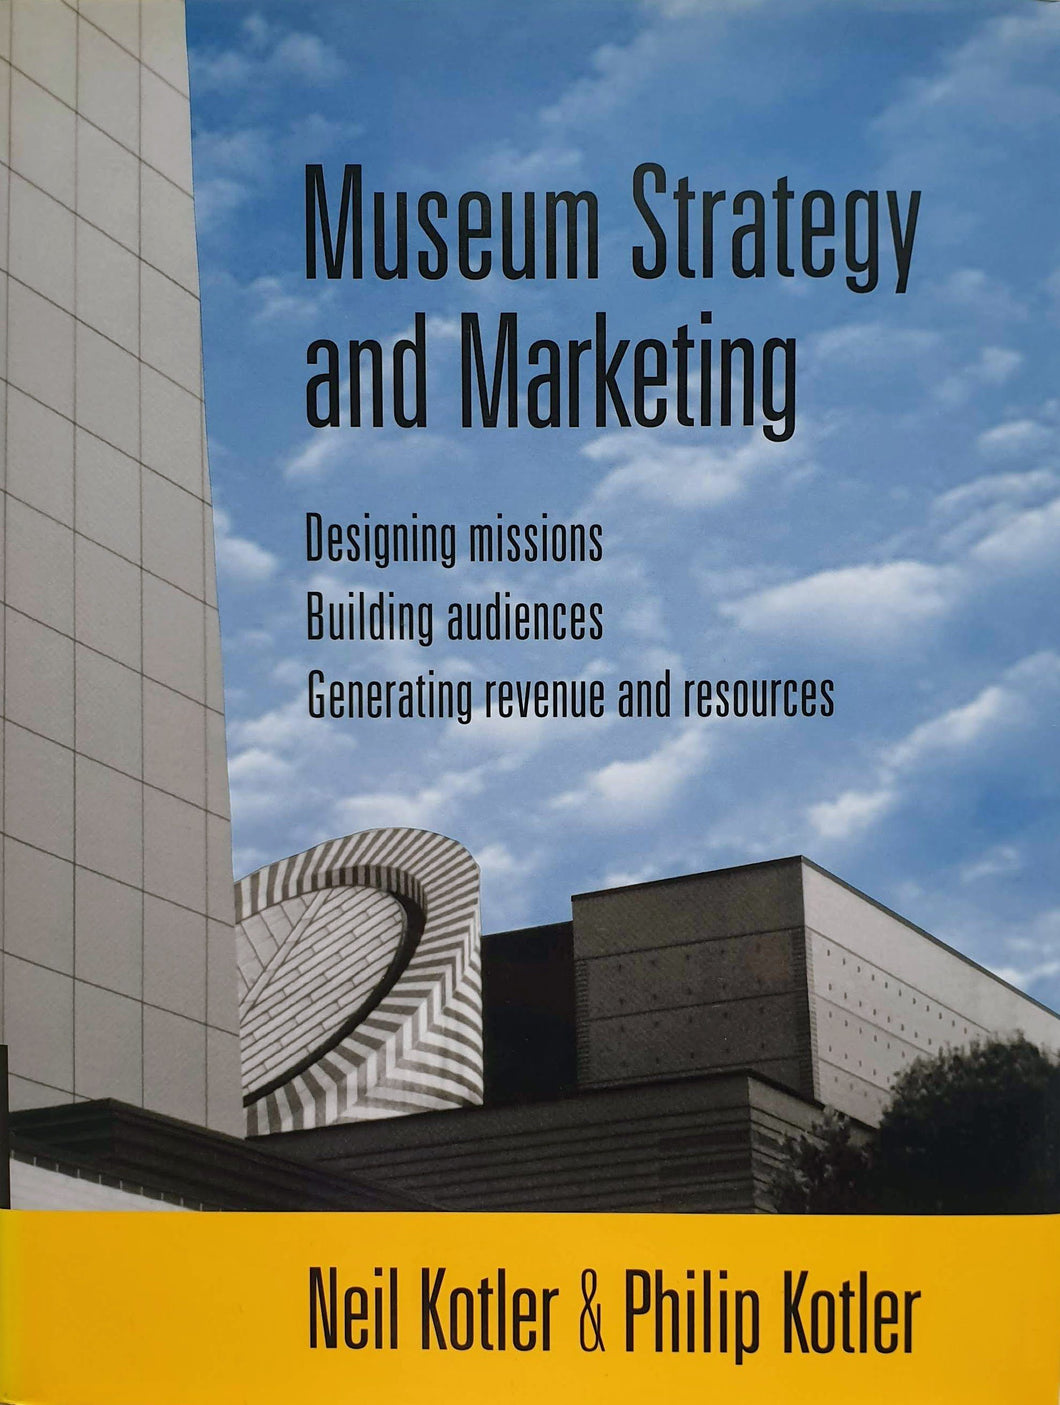 Neil Kotler & Philip Kotler - Museum Strategy and Marketing Textbook Blicero Books